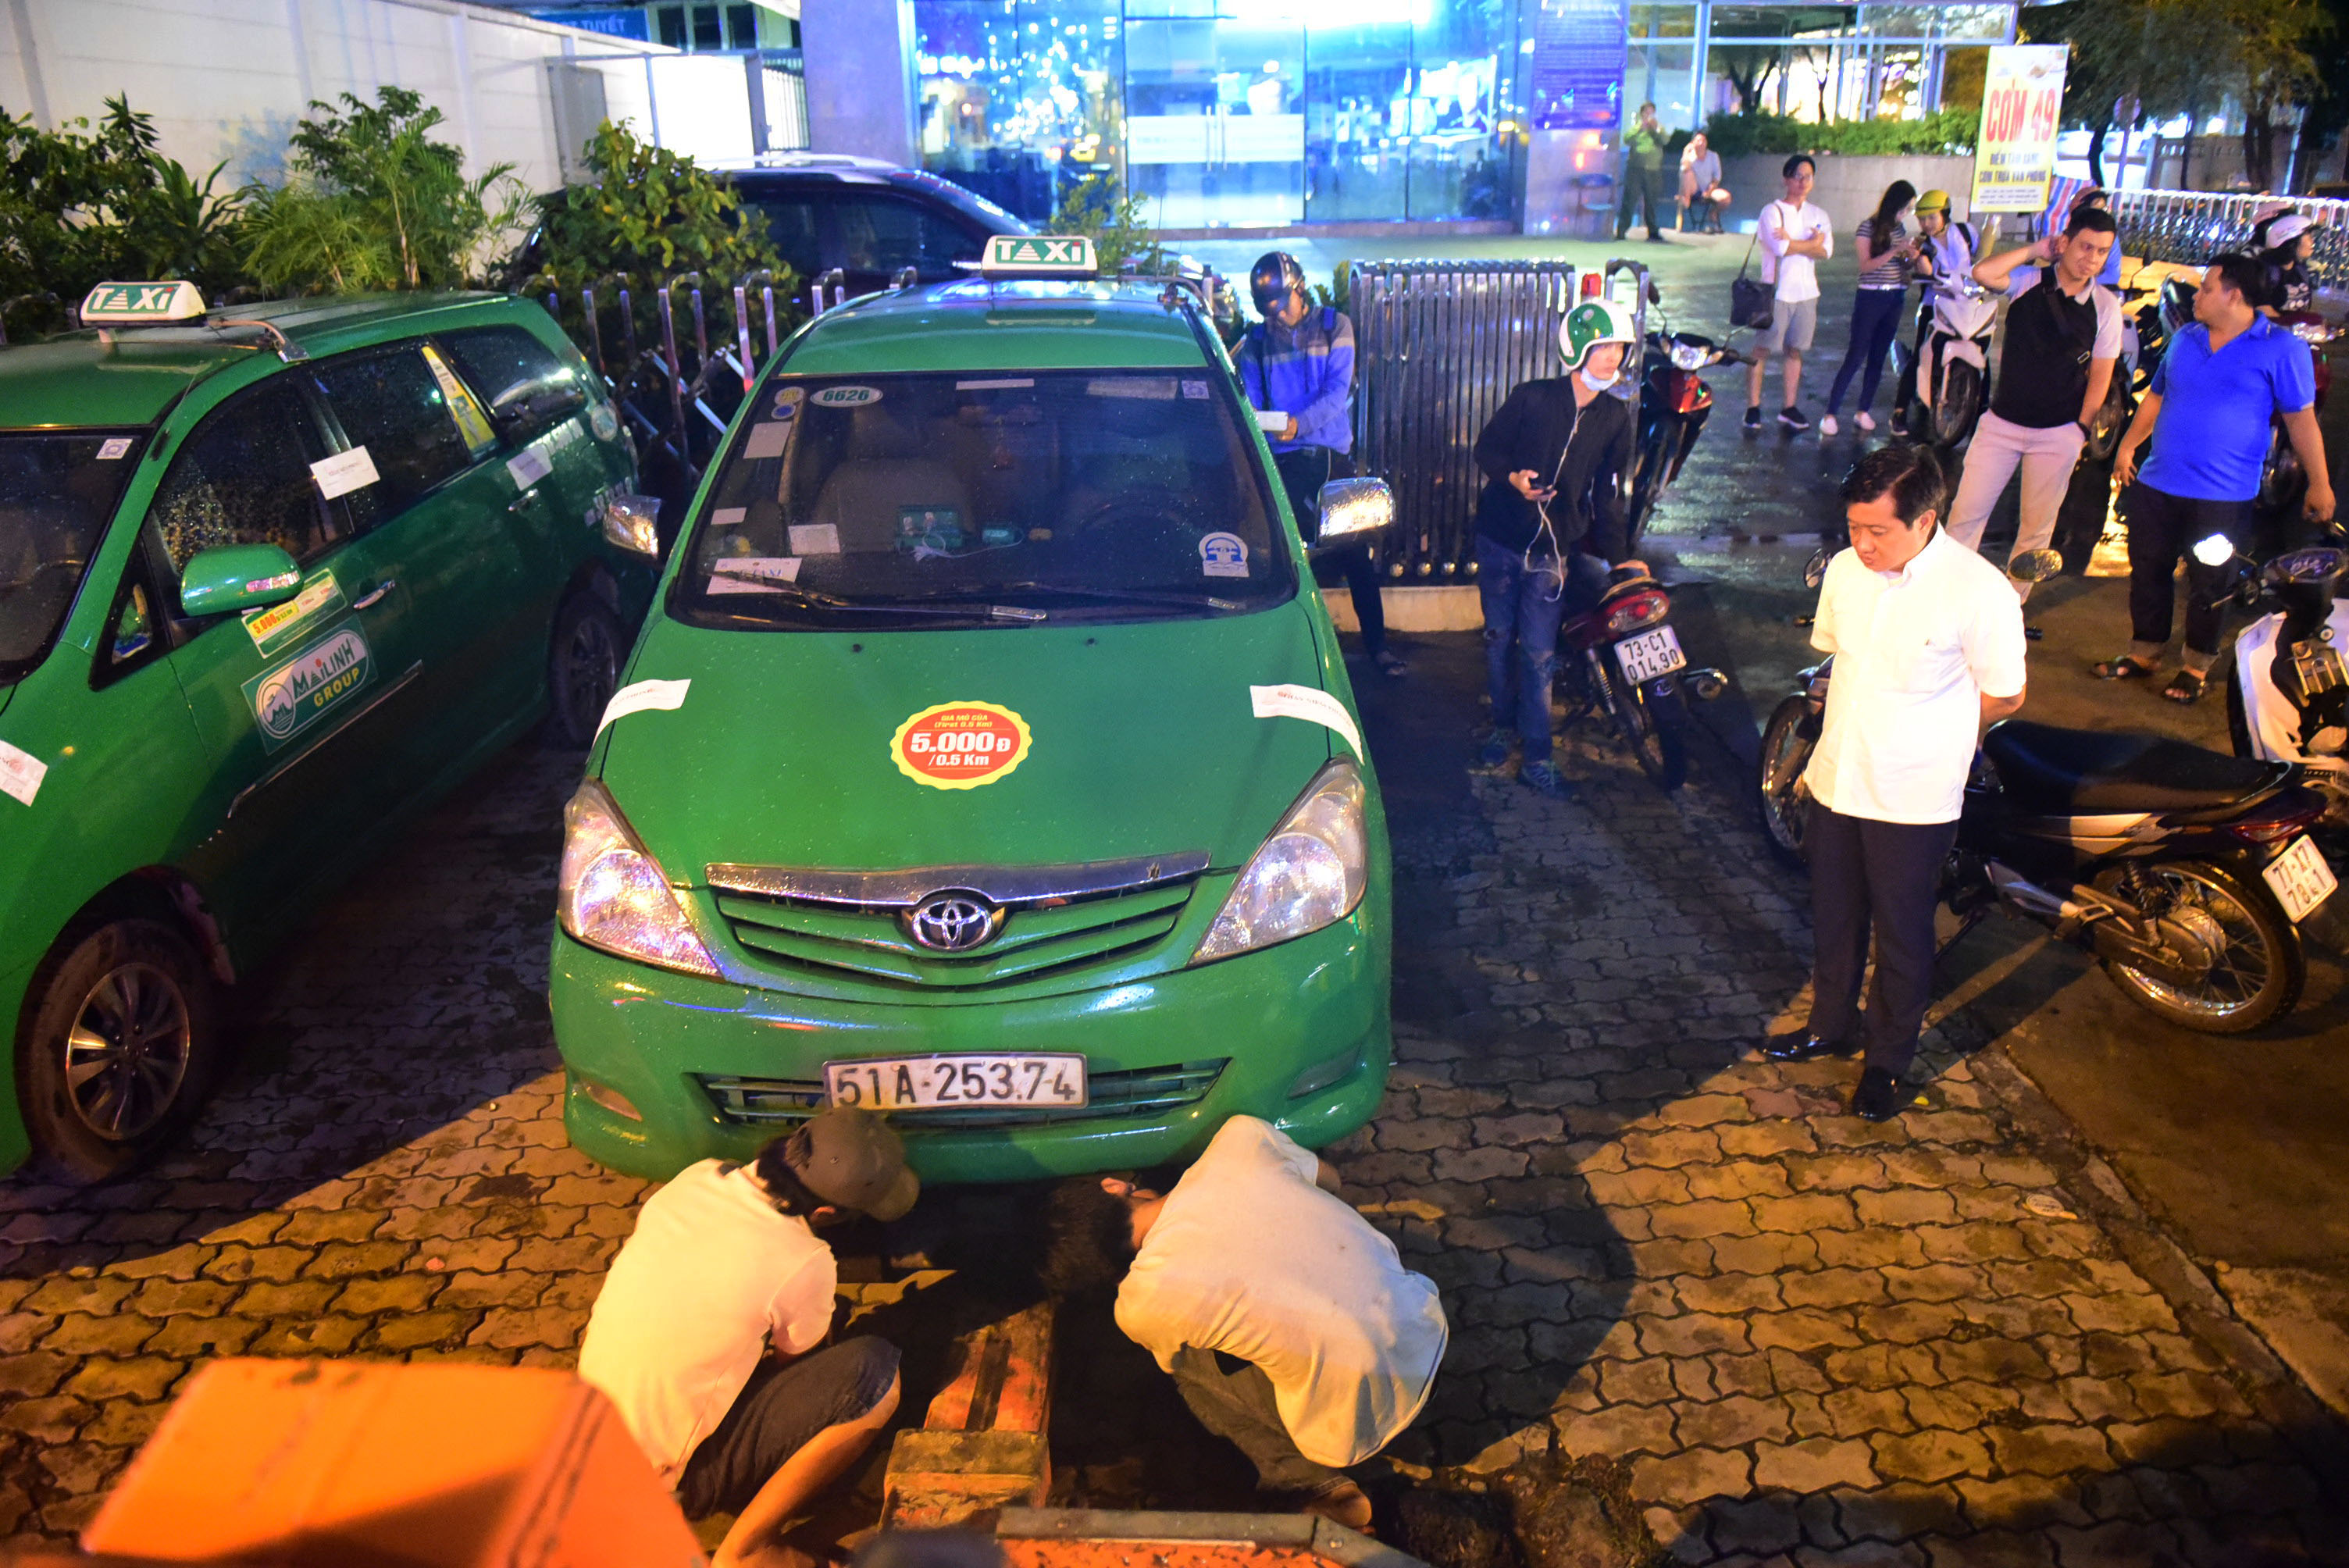 Niêm phong 4 chiếc xe taxi đậu trên vỉa hè đường Nguyễn Thị Minh Khai để cẩu về phường - Ảnh: HỮU THUẬN